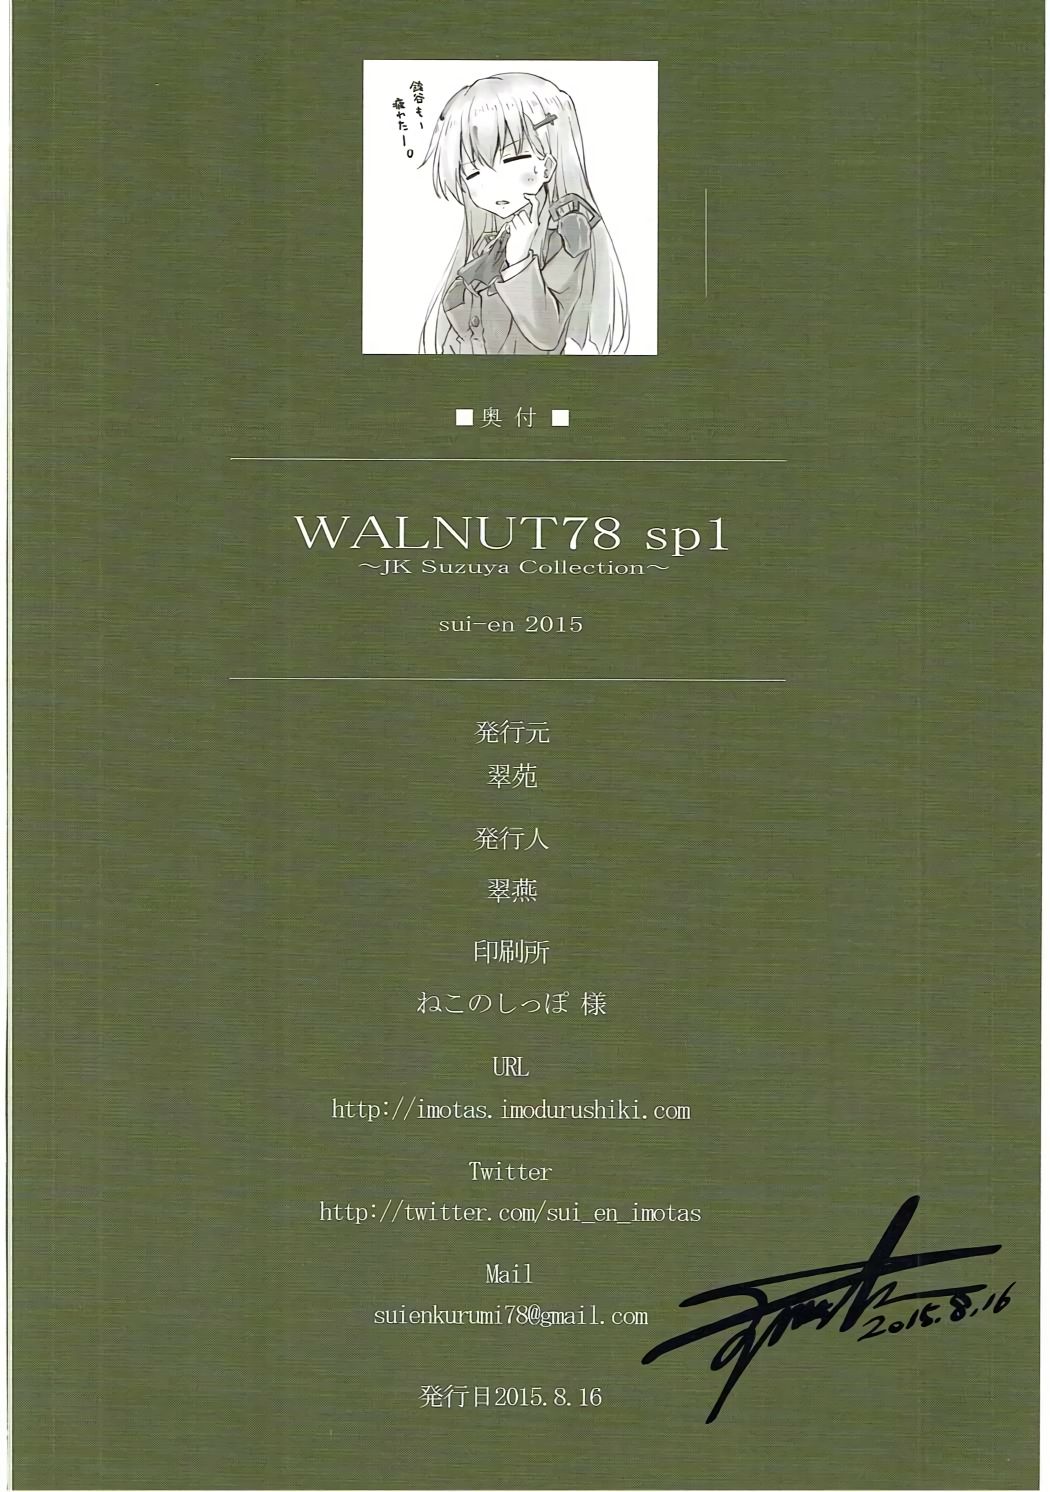 WALNUT78 SP1